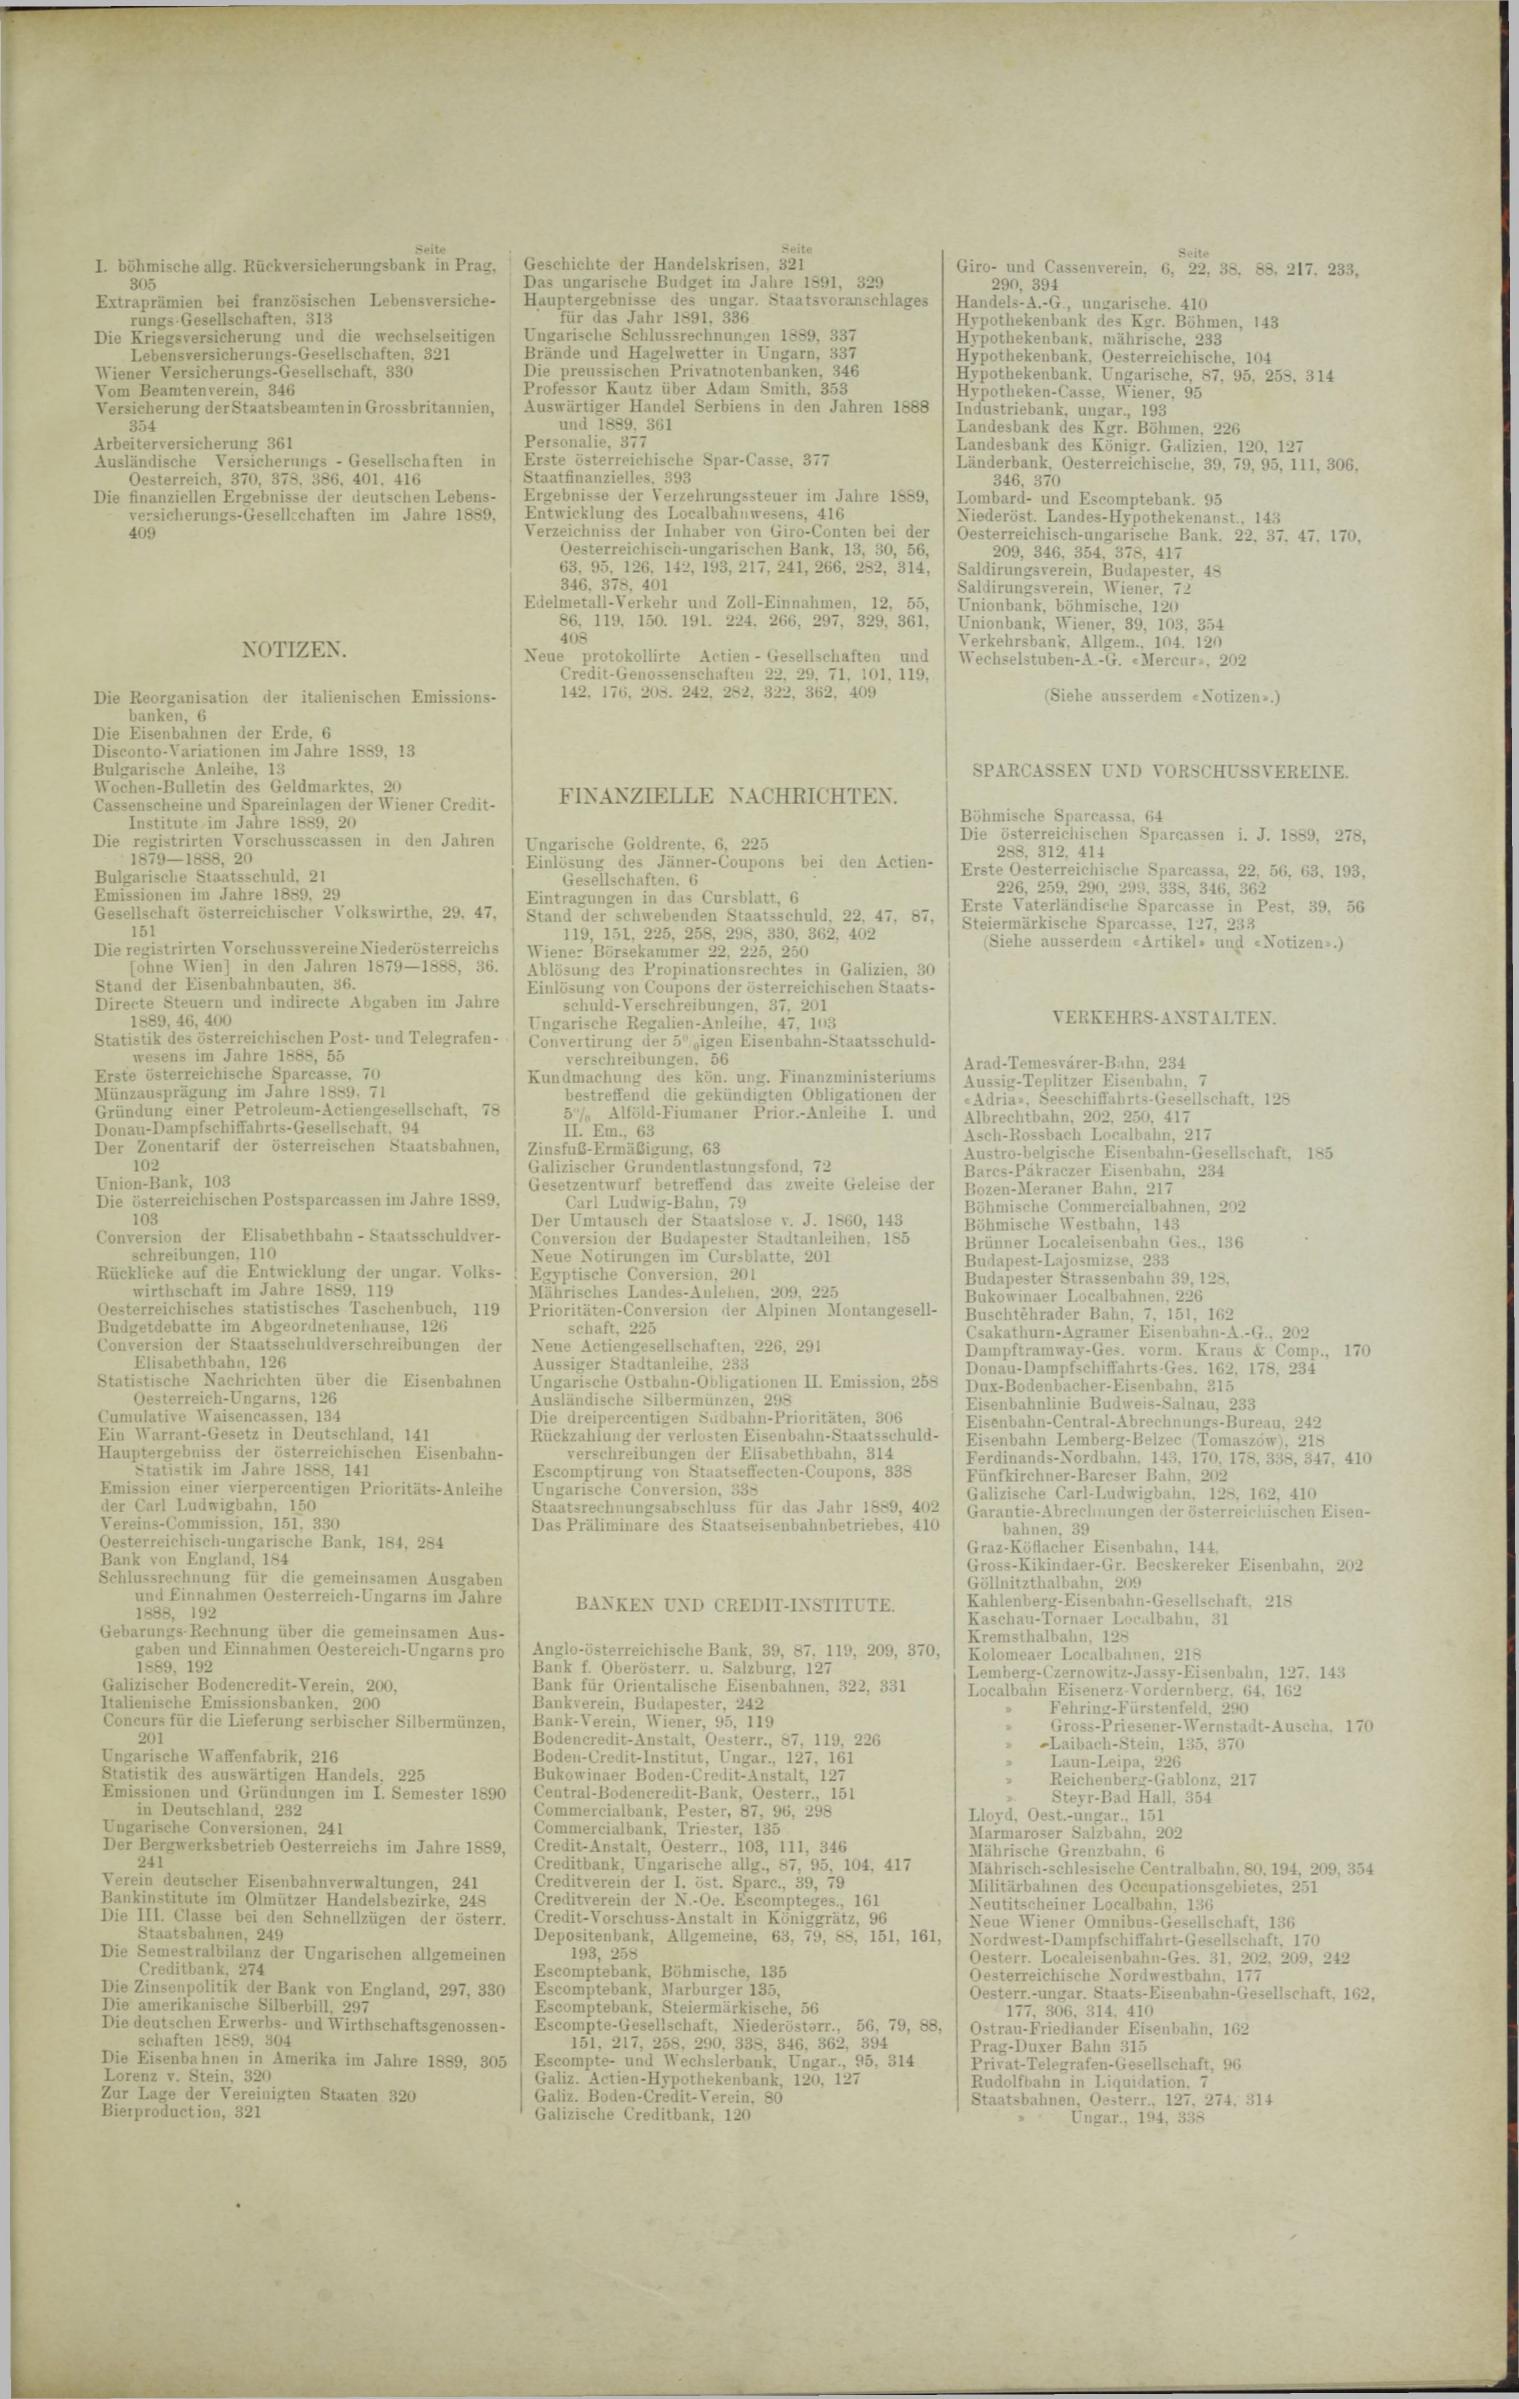 Der Tresor 13.02.1890 - Seite 11